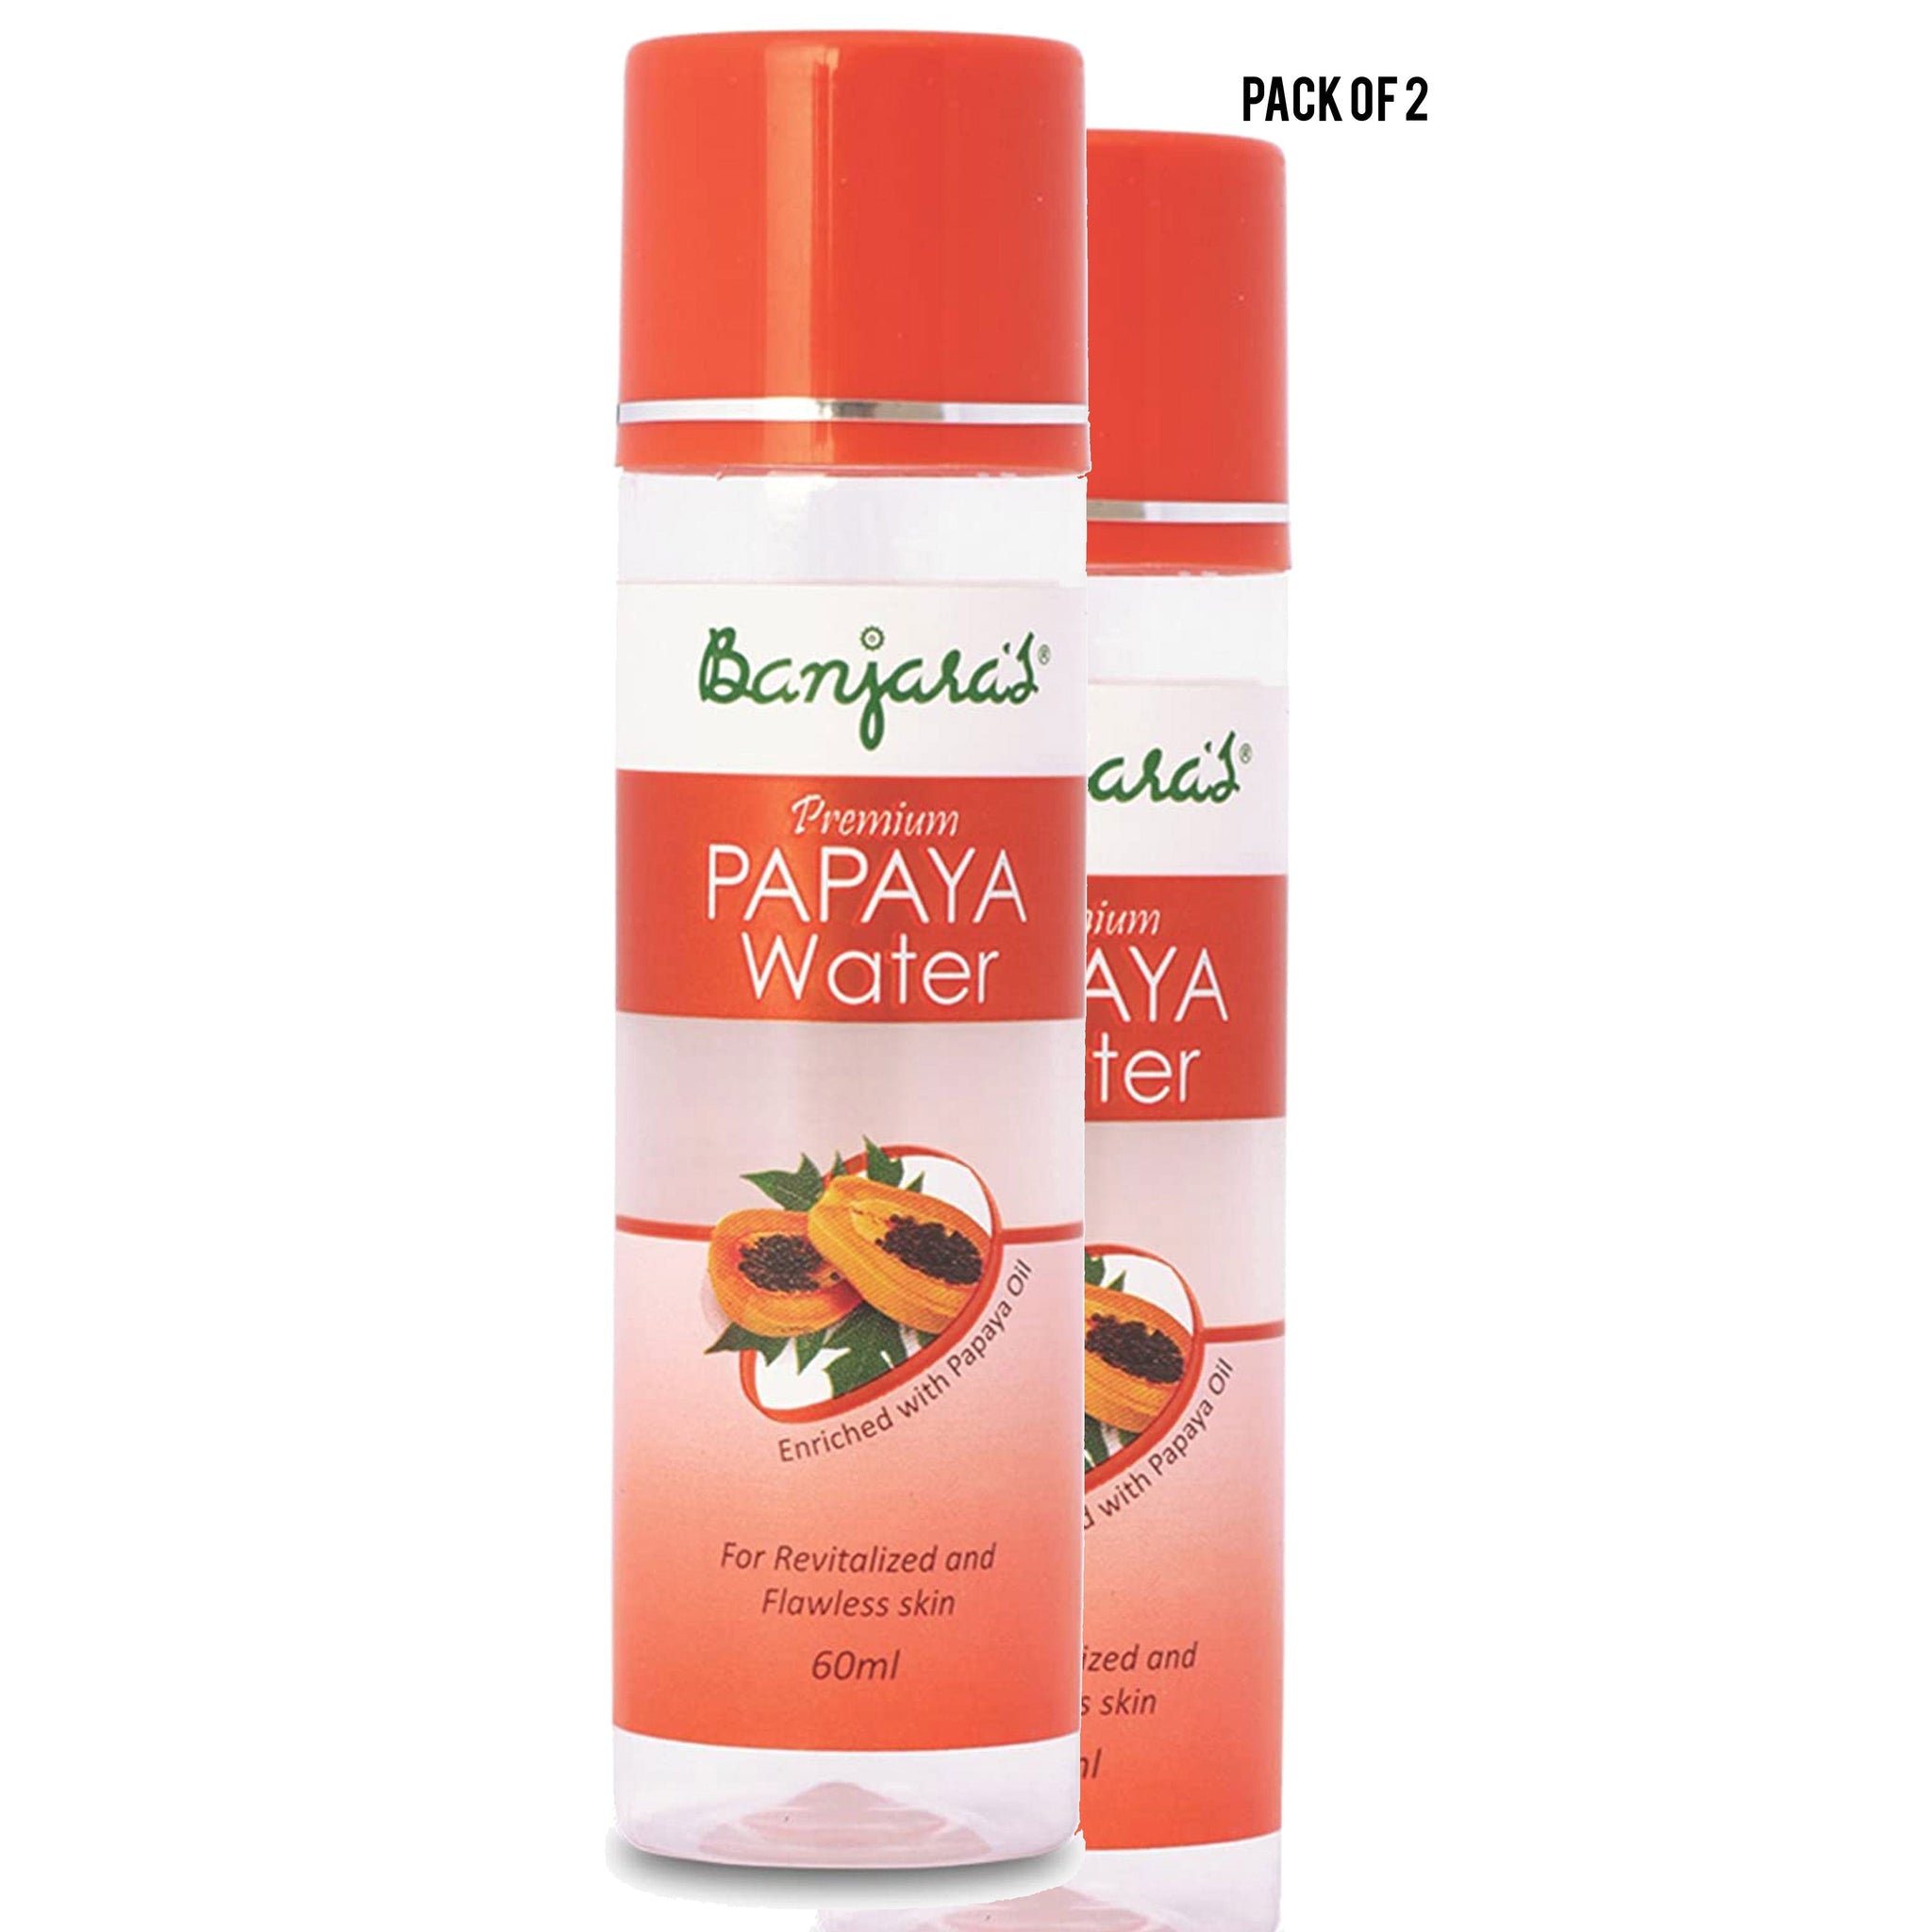 Banjaras Premium Papaya Water 60ml Value Pack of 2 